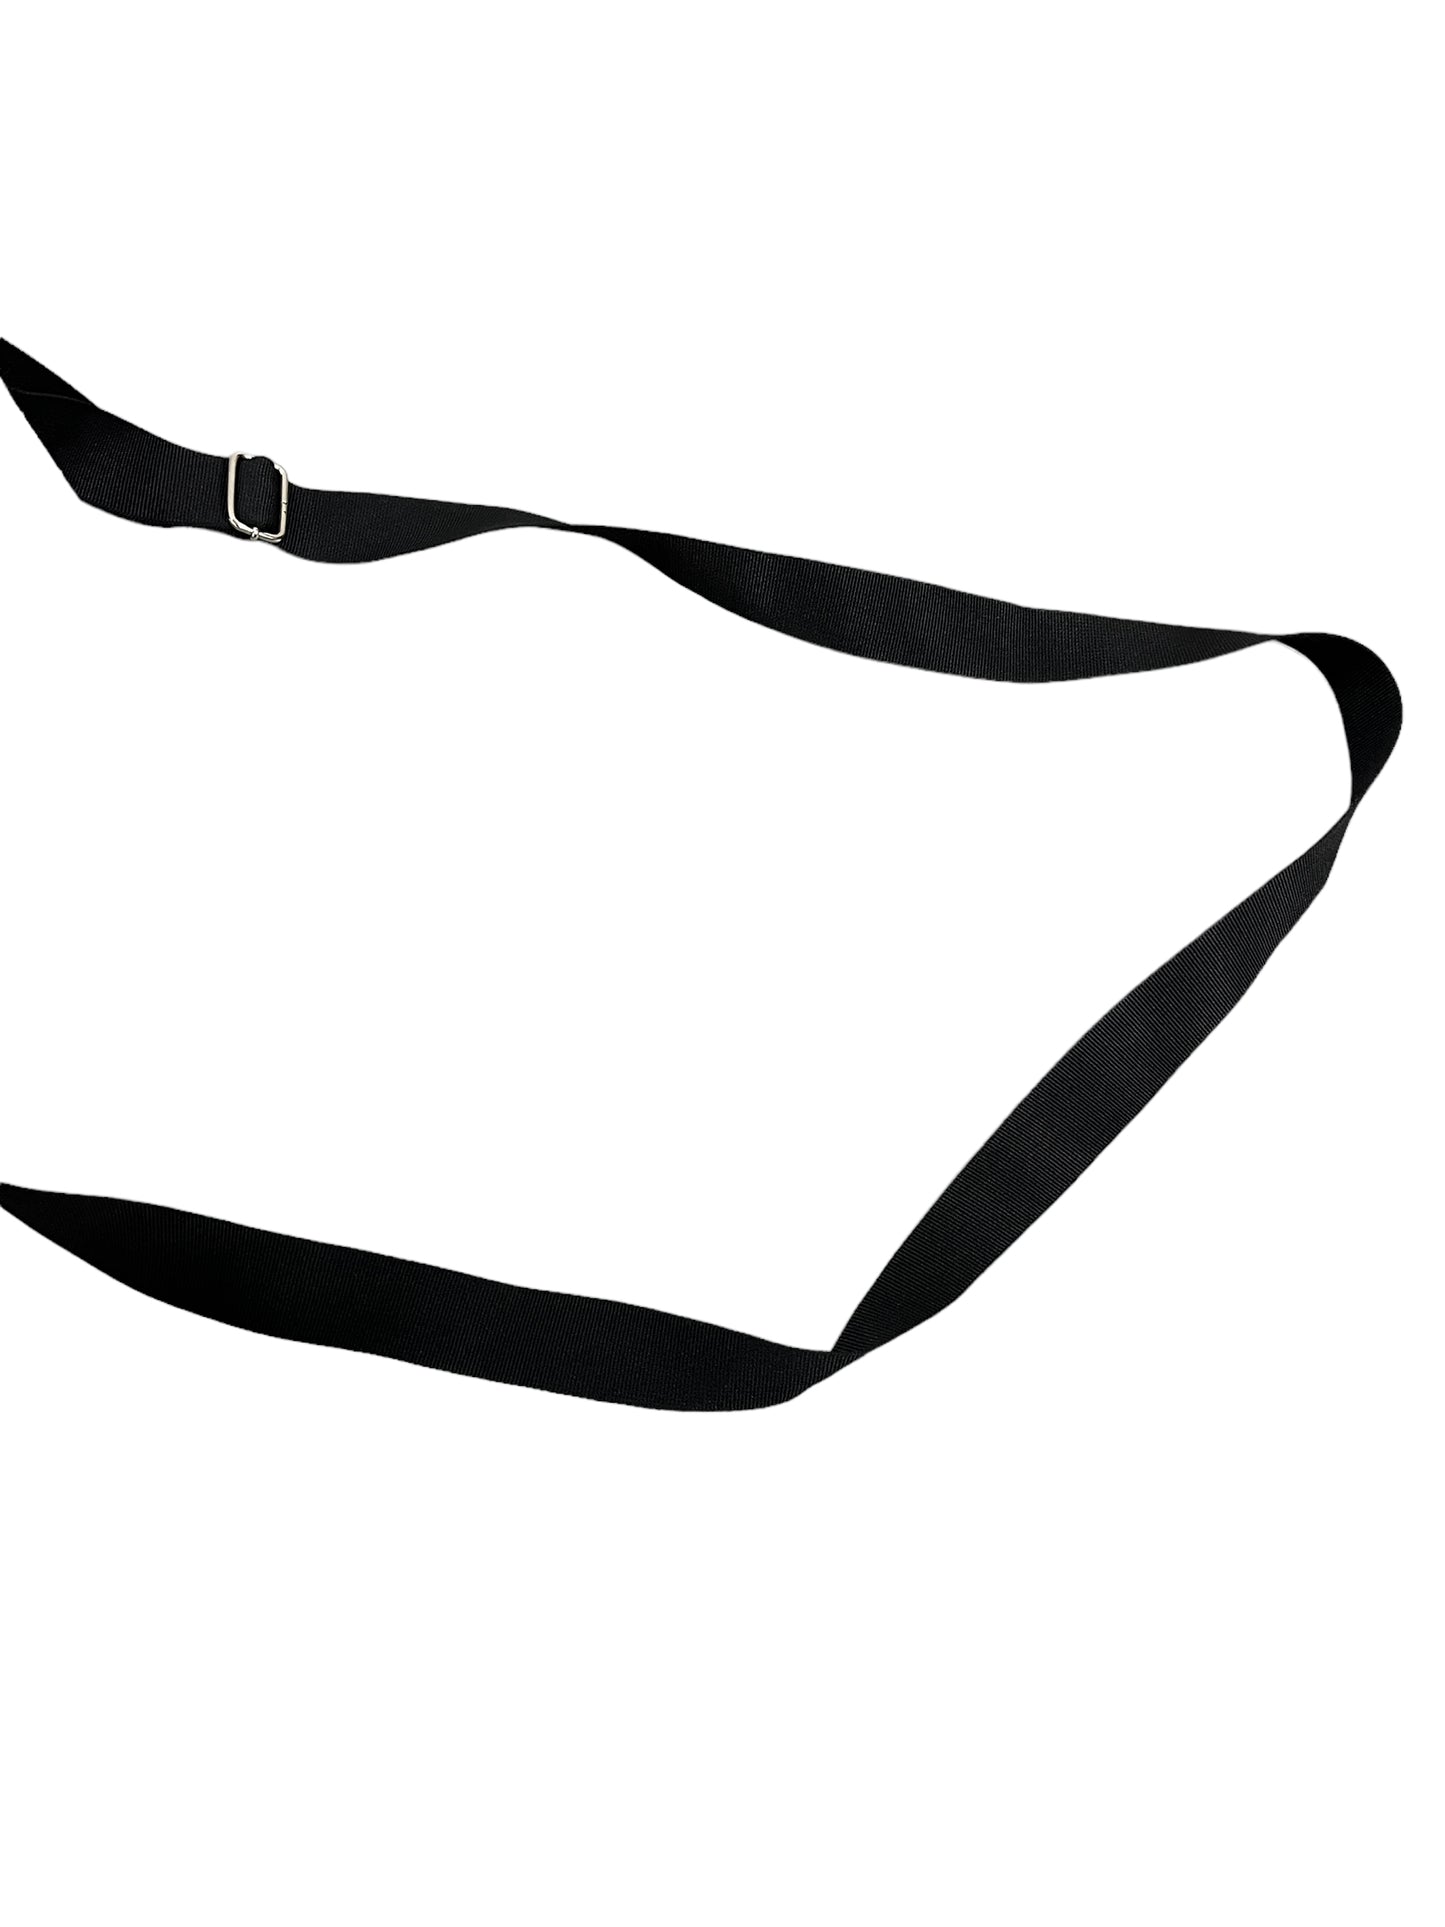 Custom Handmade Nike Box Bag - Medium (Black)